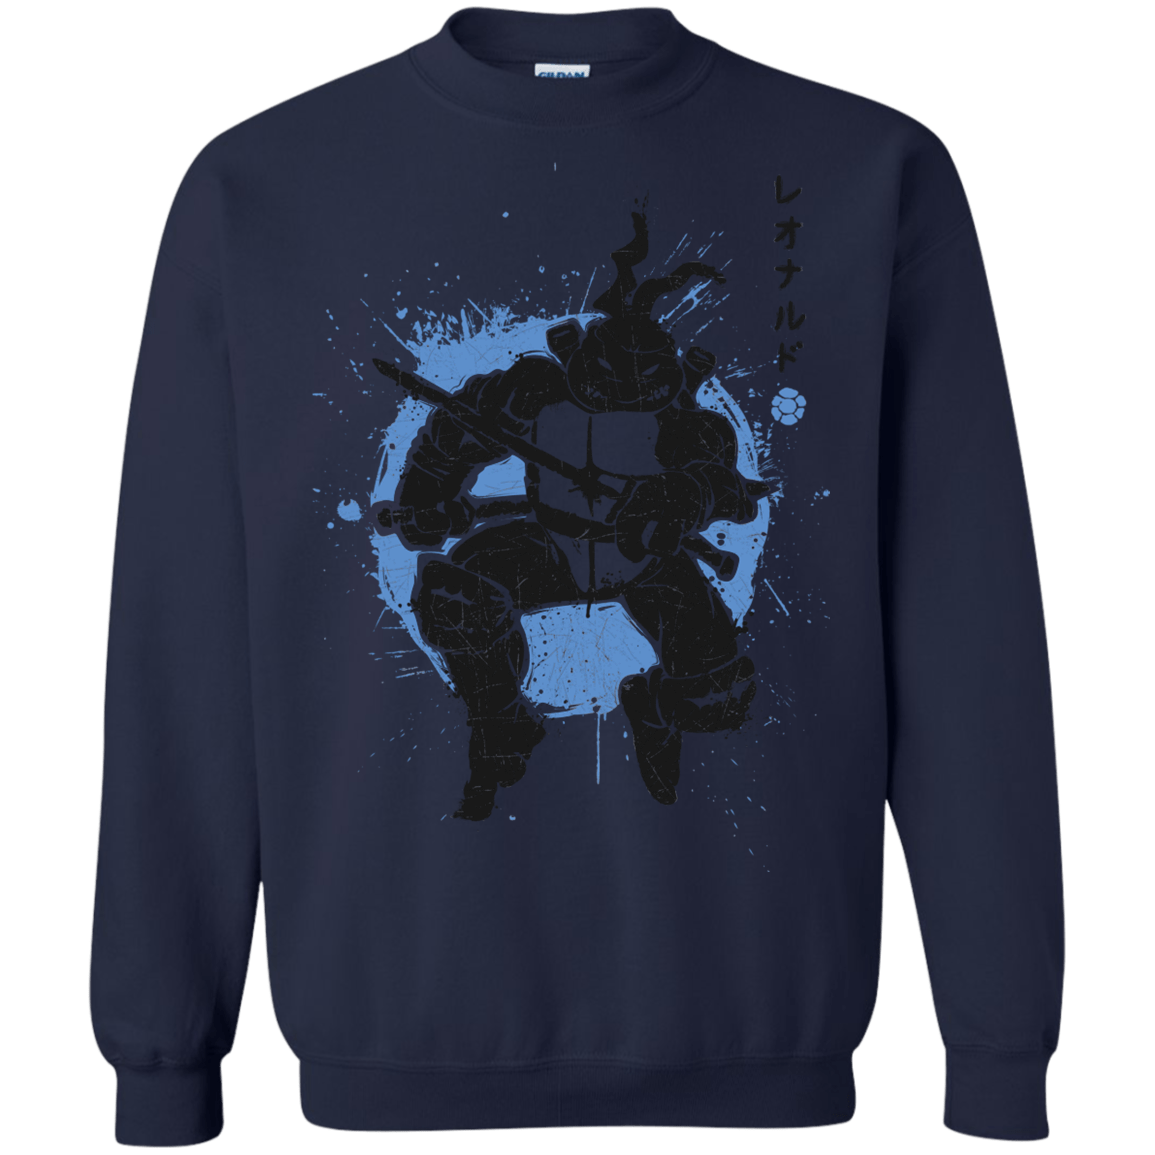 Sweatshirts Navy / S TMNT - Katana Warrior Crewneck Sweatshirt